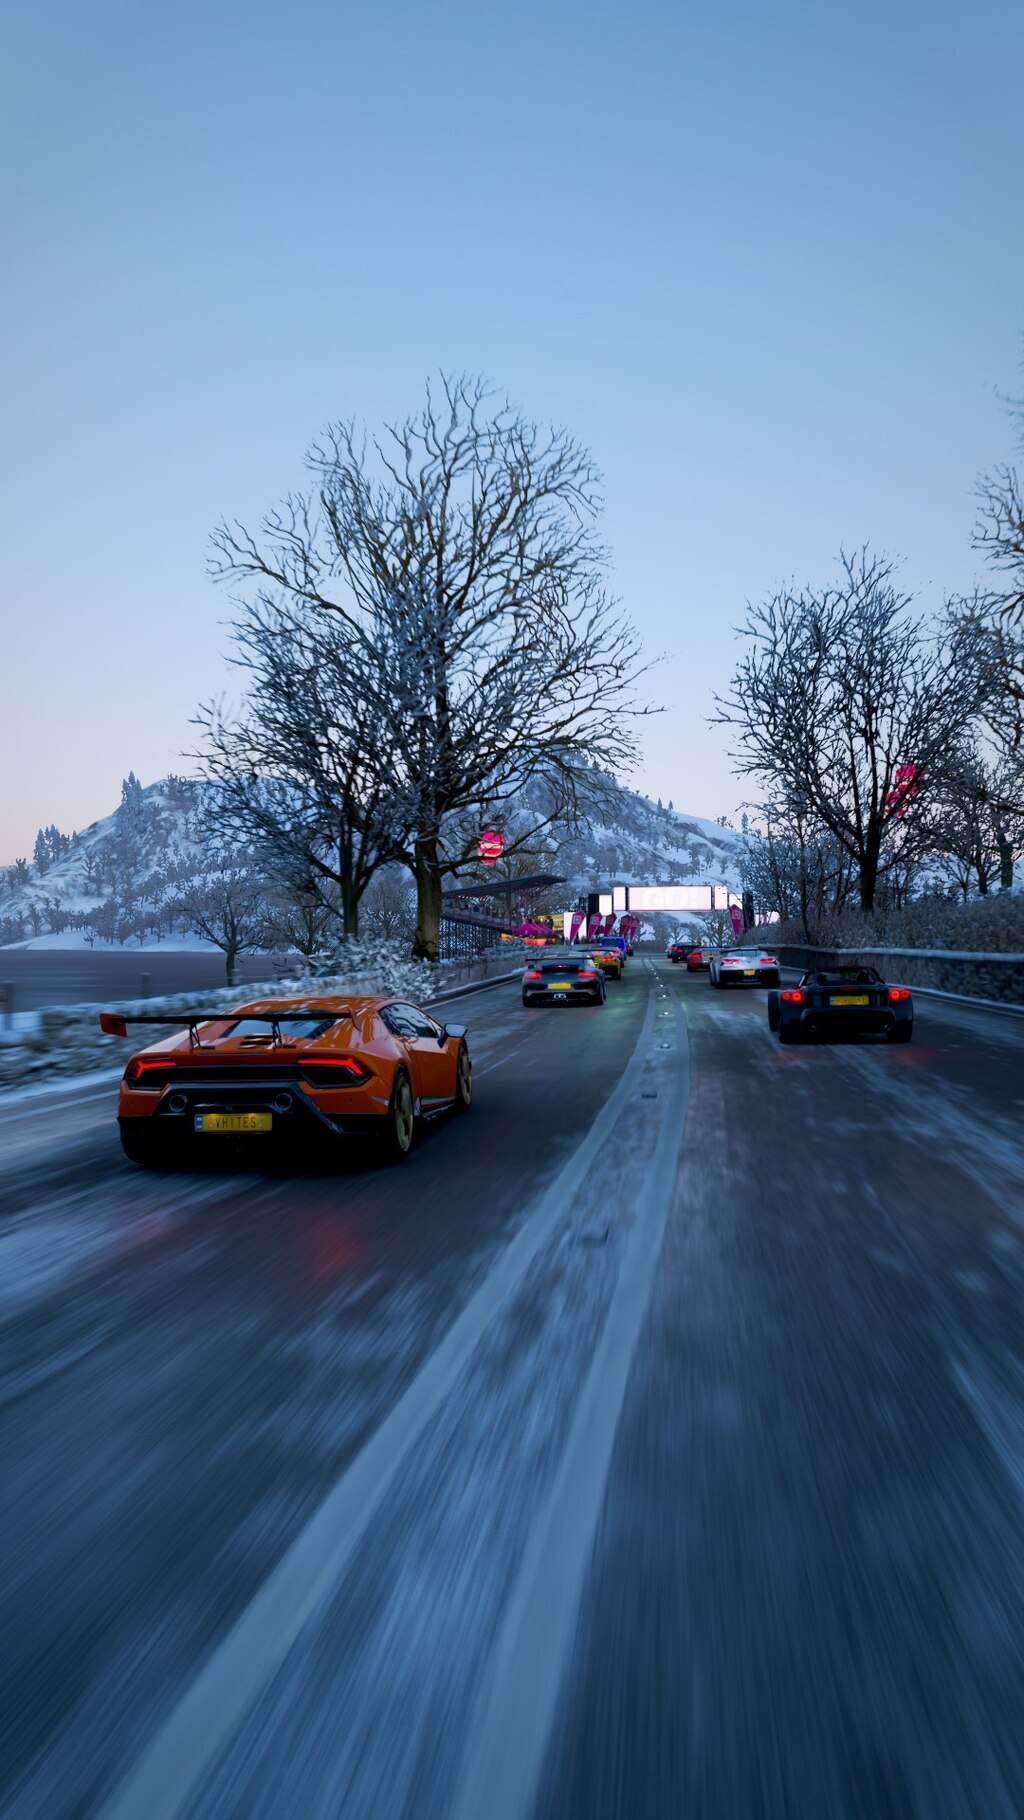 Comunidade Steam :: Forza Horizon 4